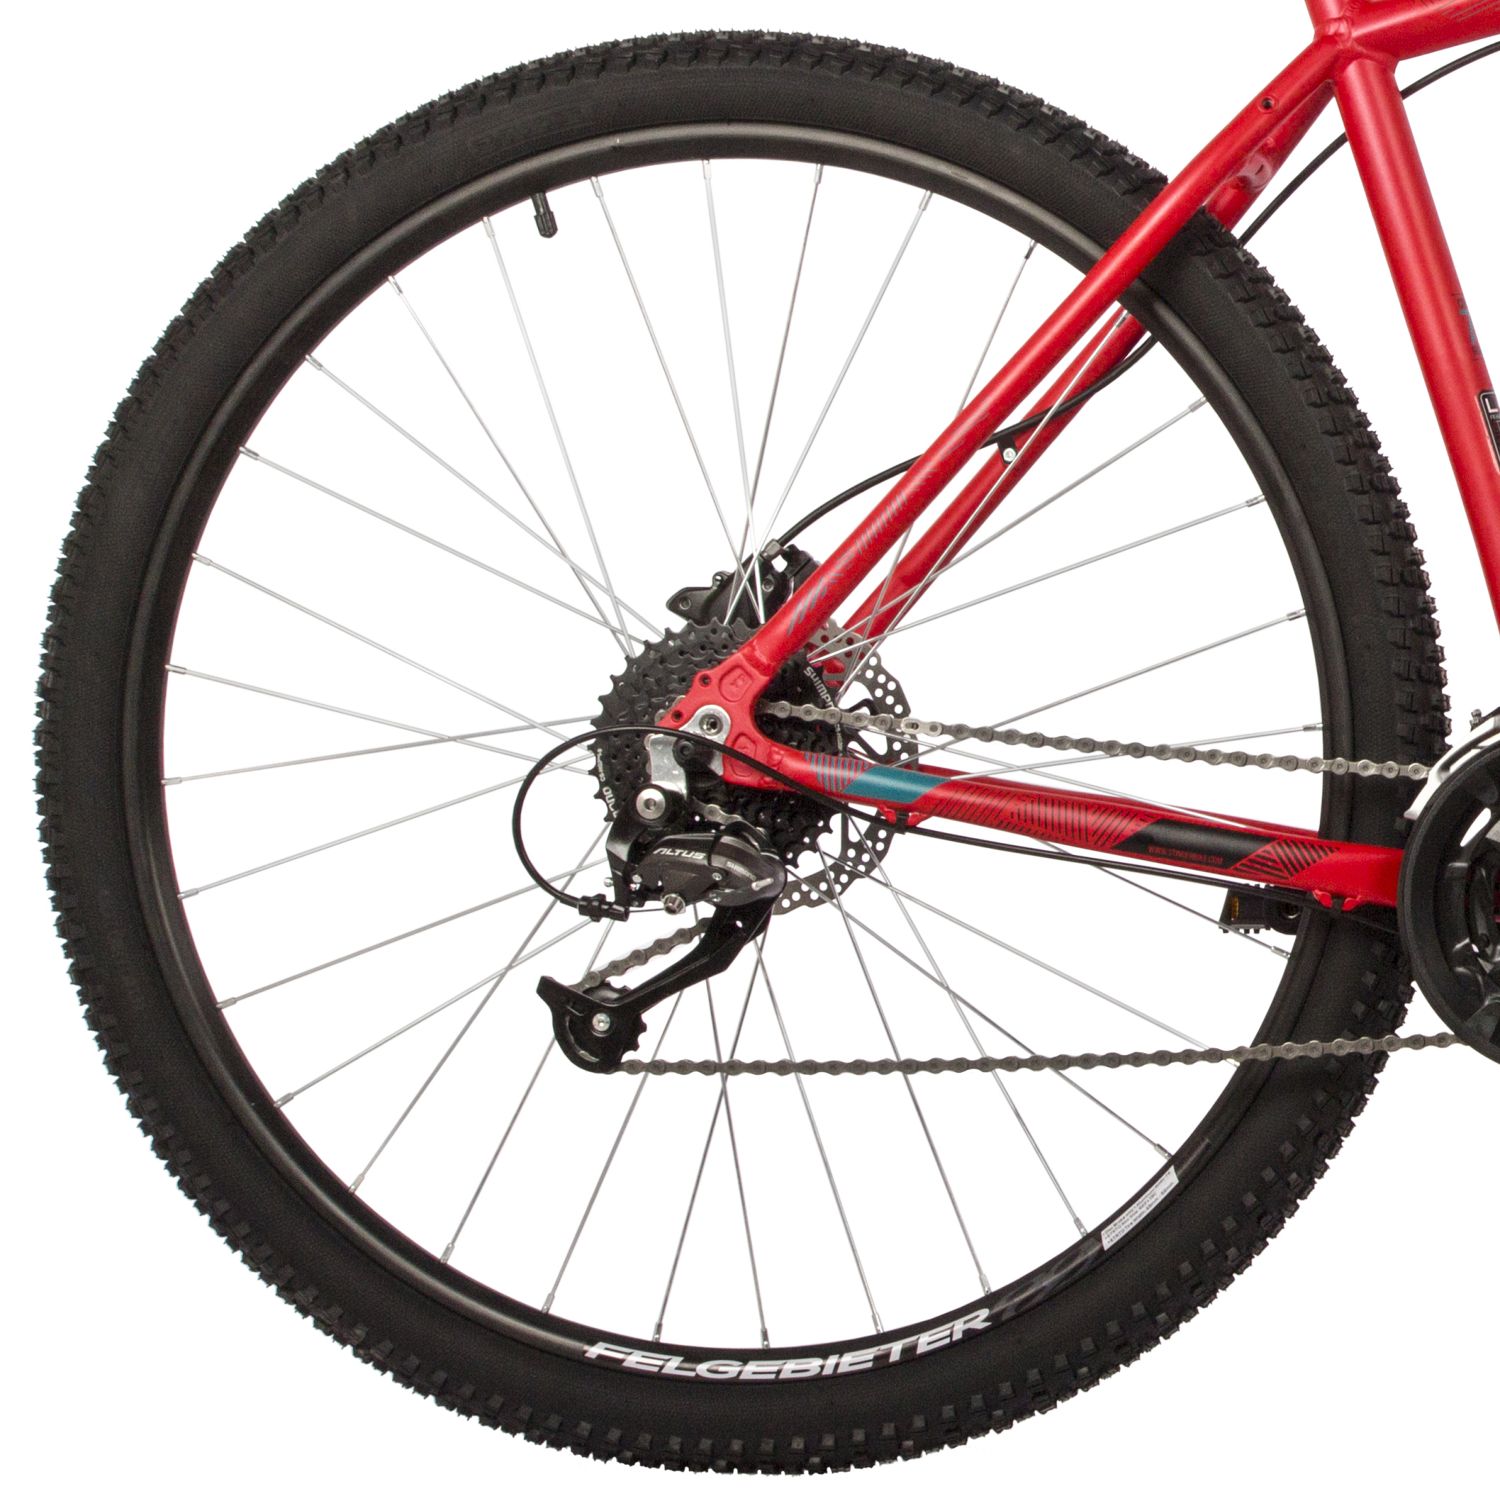 Горный велосипед Stinger Graphite Pro 29, год 2021, цвет Красный, ростовка 22